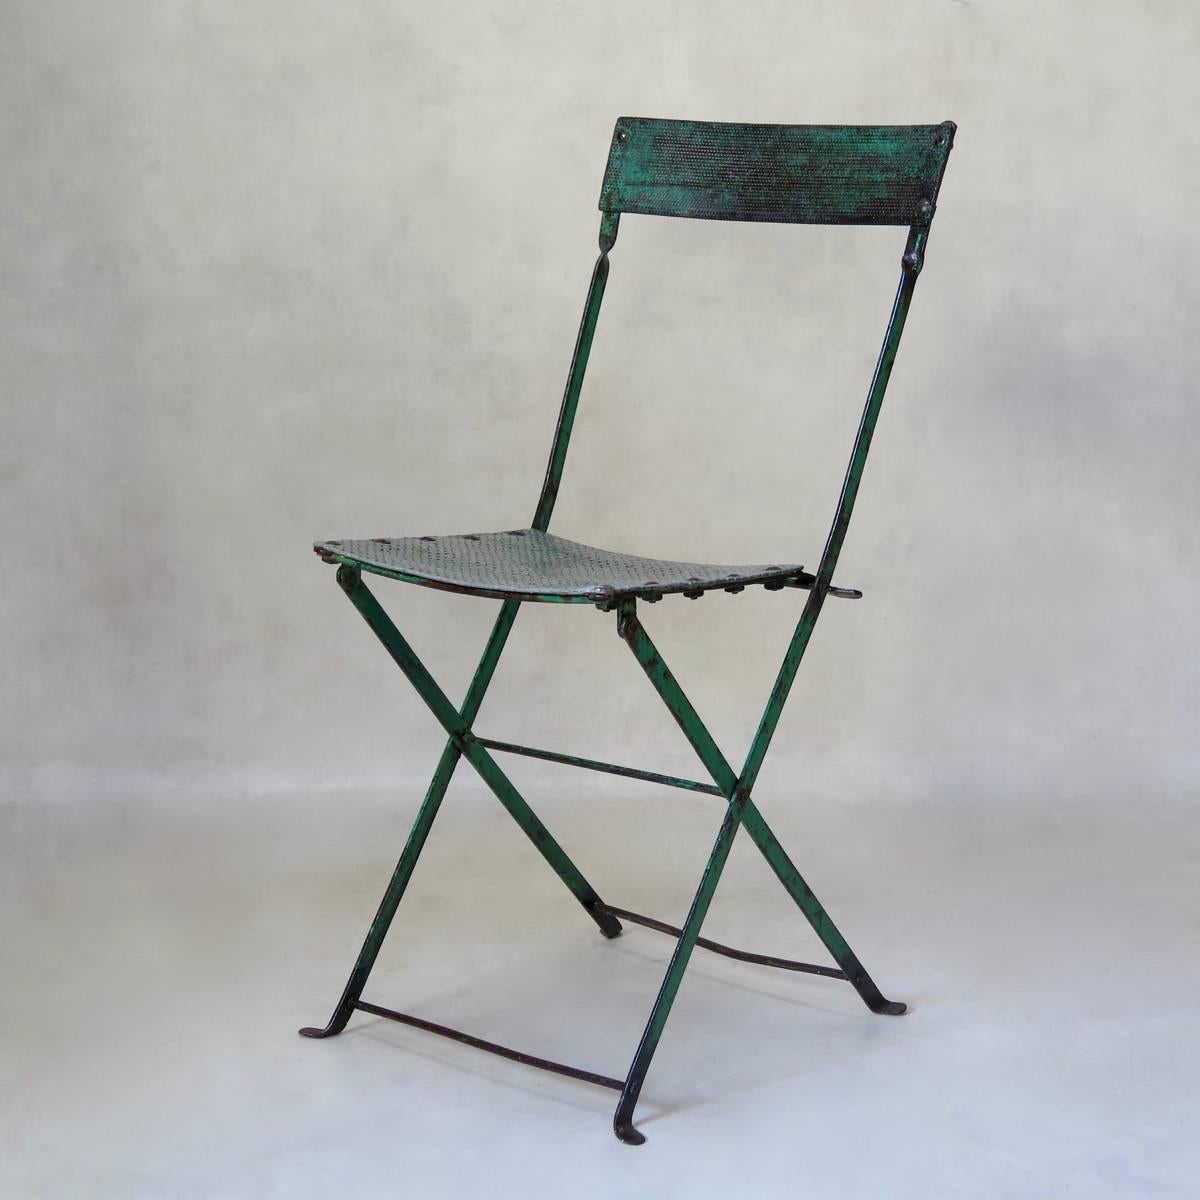 Très belle chaise pliante en fer avec une magnifique patine verte. L'assise et le dossier sont réalisés en tôle d'aluminium perforée.